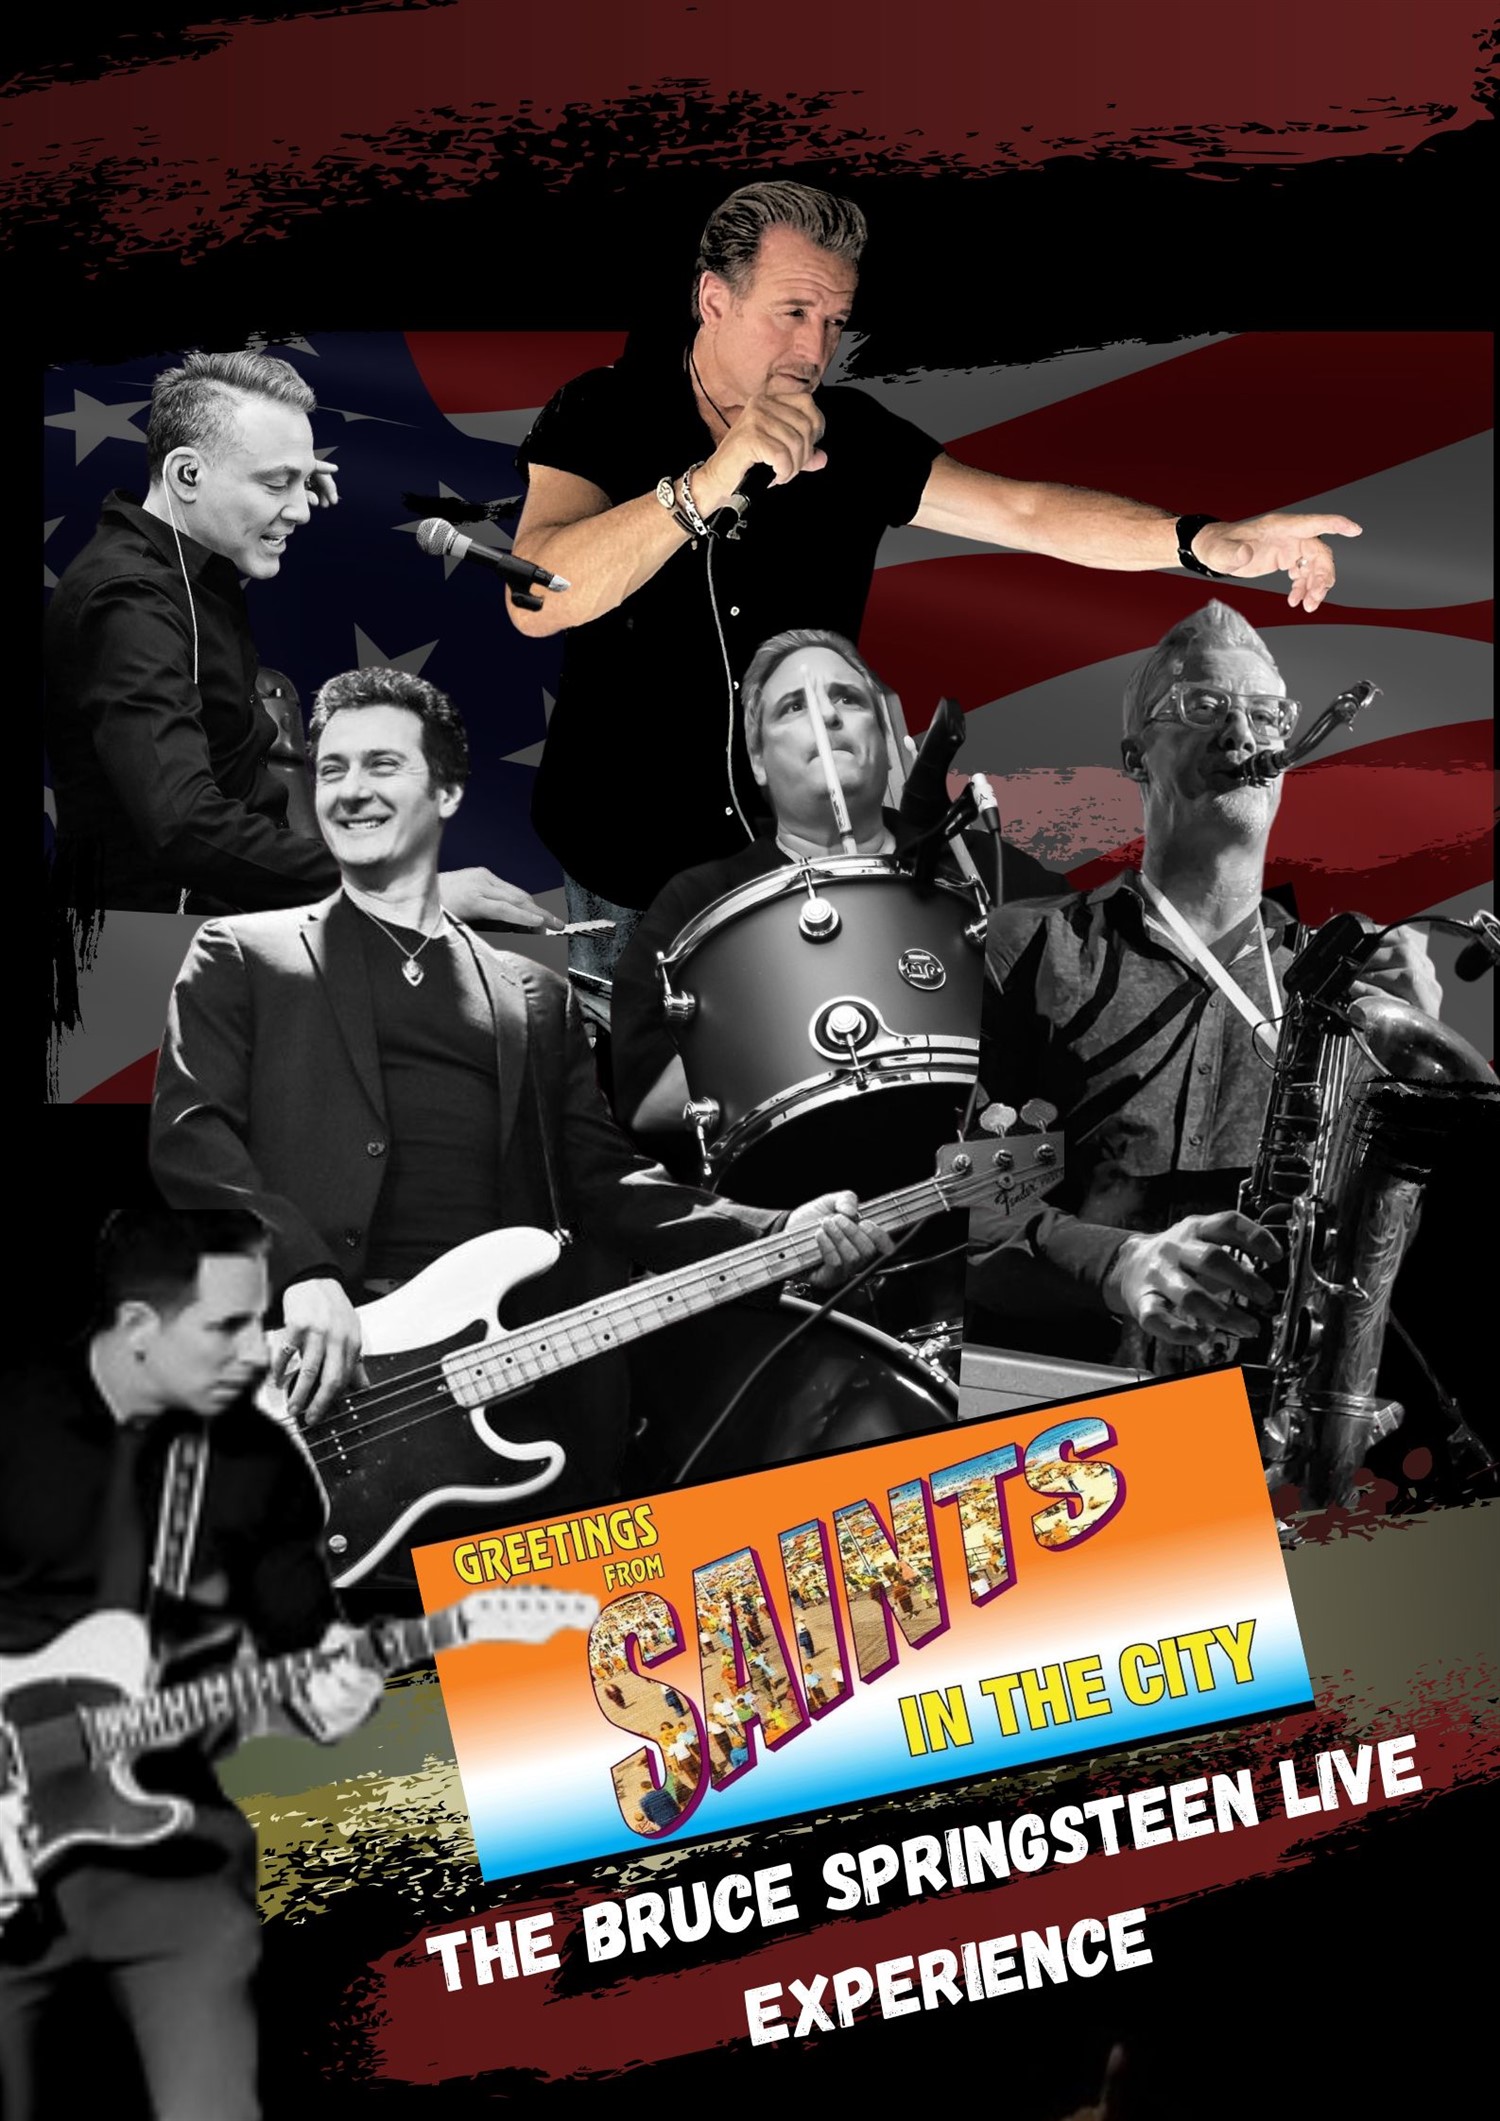 Saints in the City The Bruce Springsteen Live Experience on janv. 05, 15:00@Yorktown Stage 2023 - Choisissez un siège,Achetez des billets et obtenez des informations surYorktown Stage 